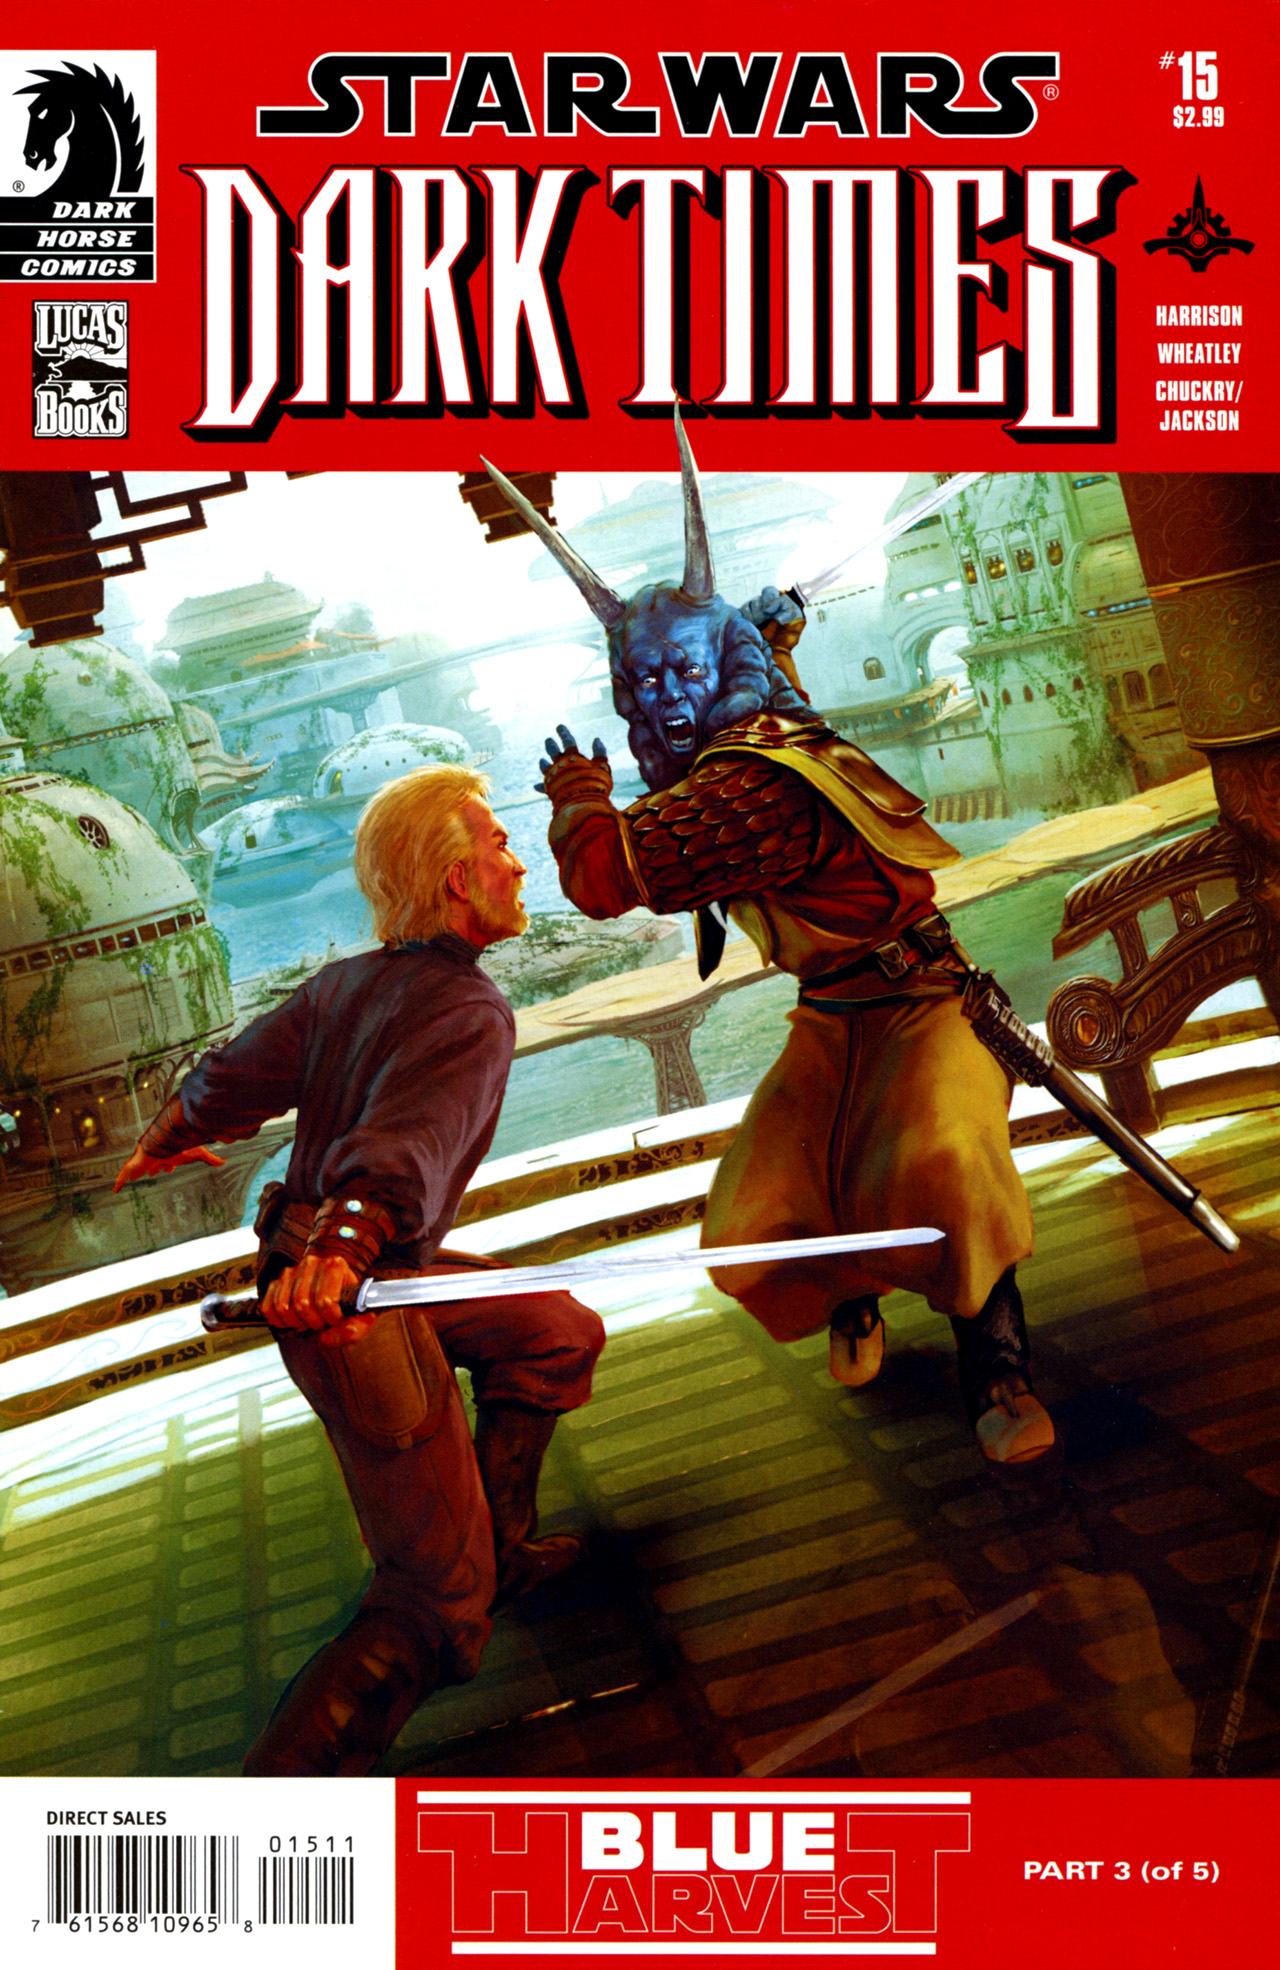 Read online Star Wars: Dark Times comic -  Issue #15 - Blue Harvest, Part 3 - 1